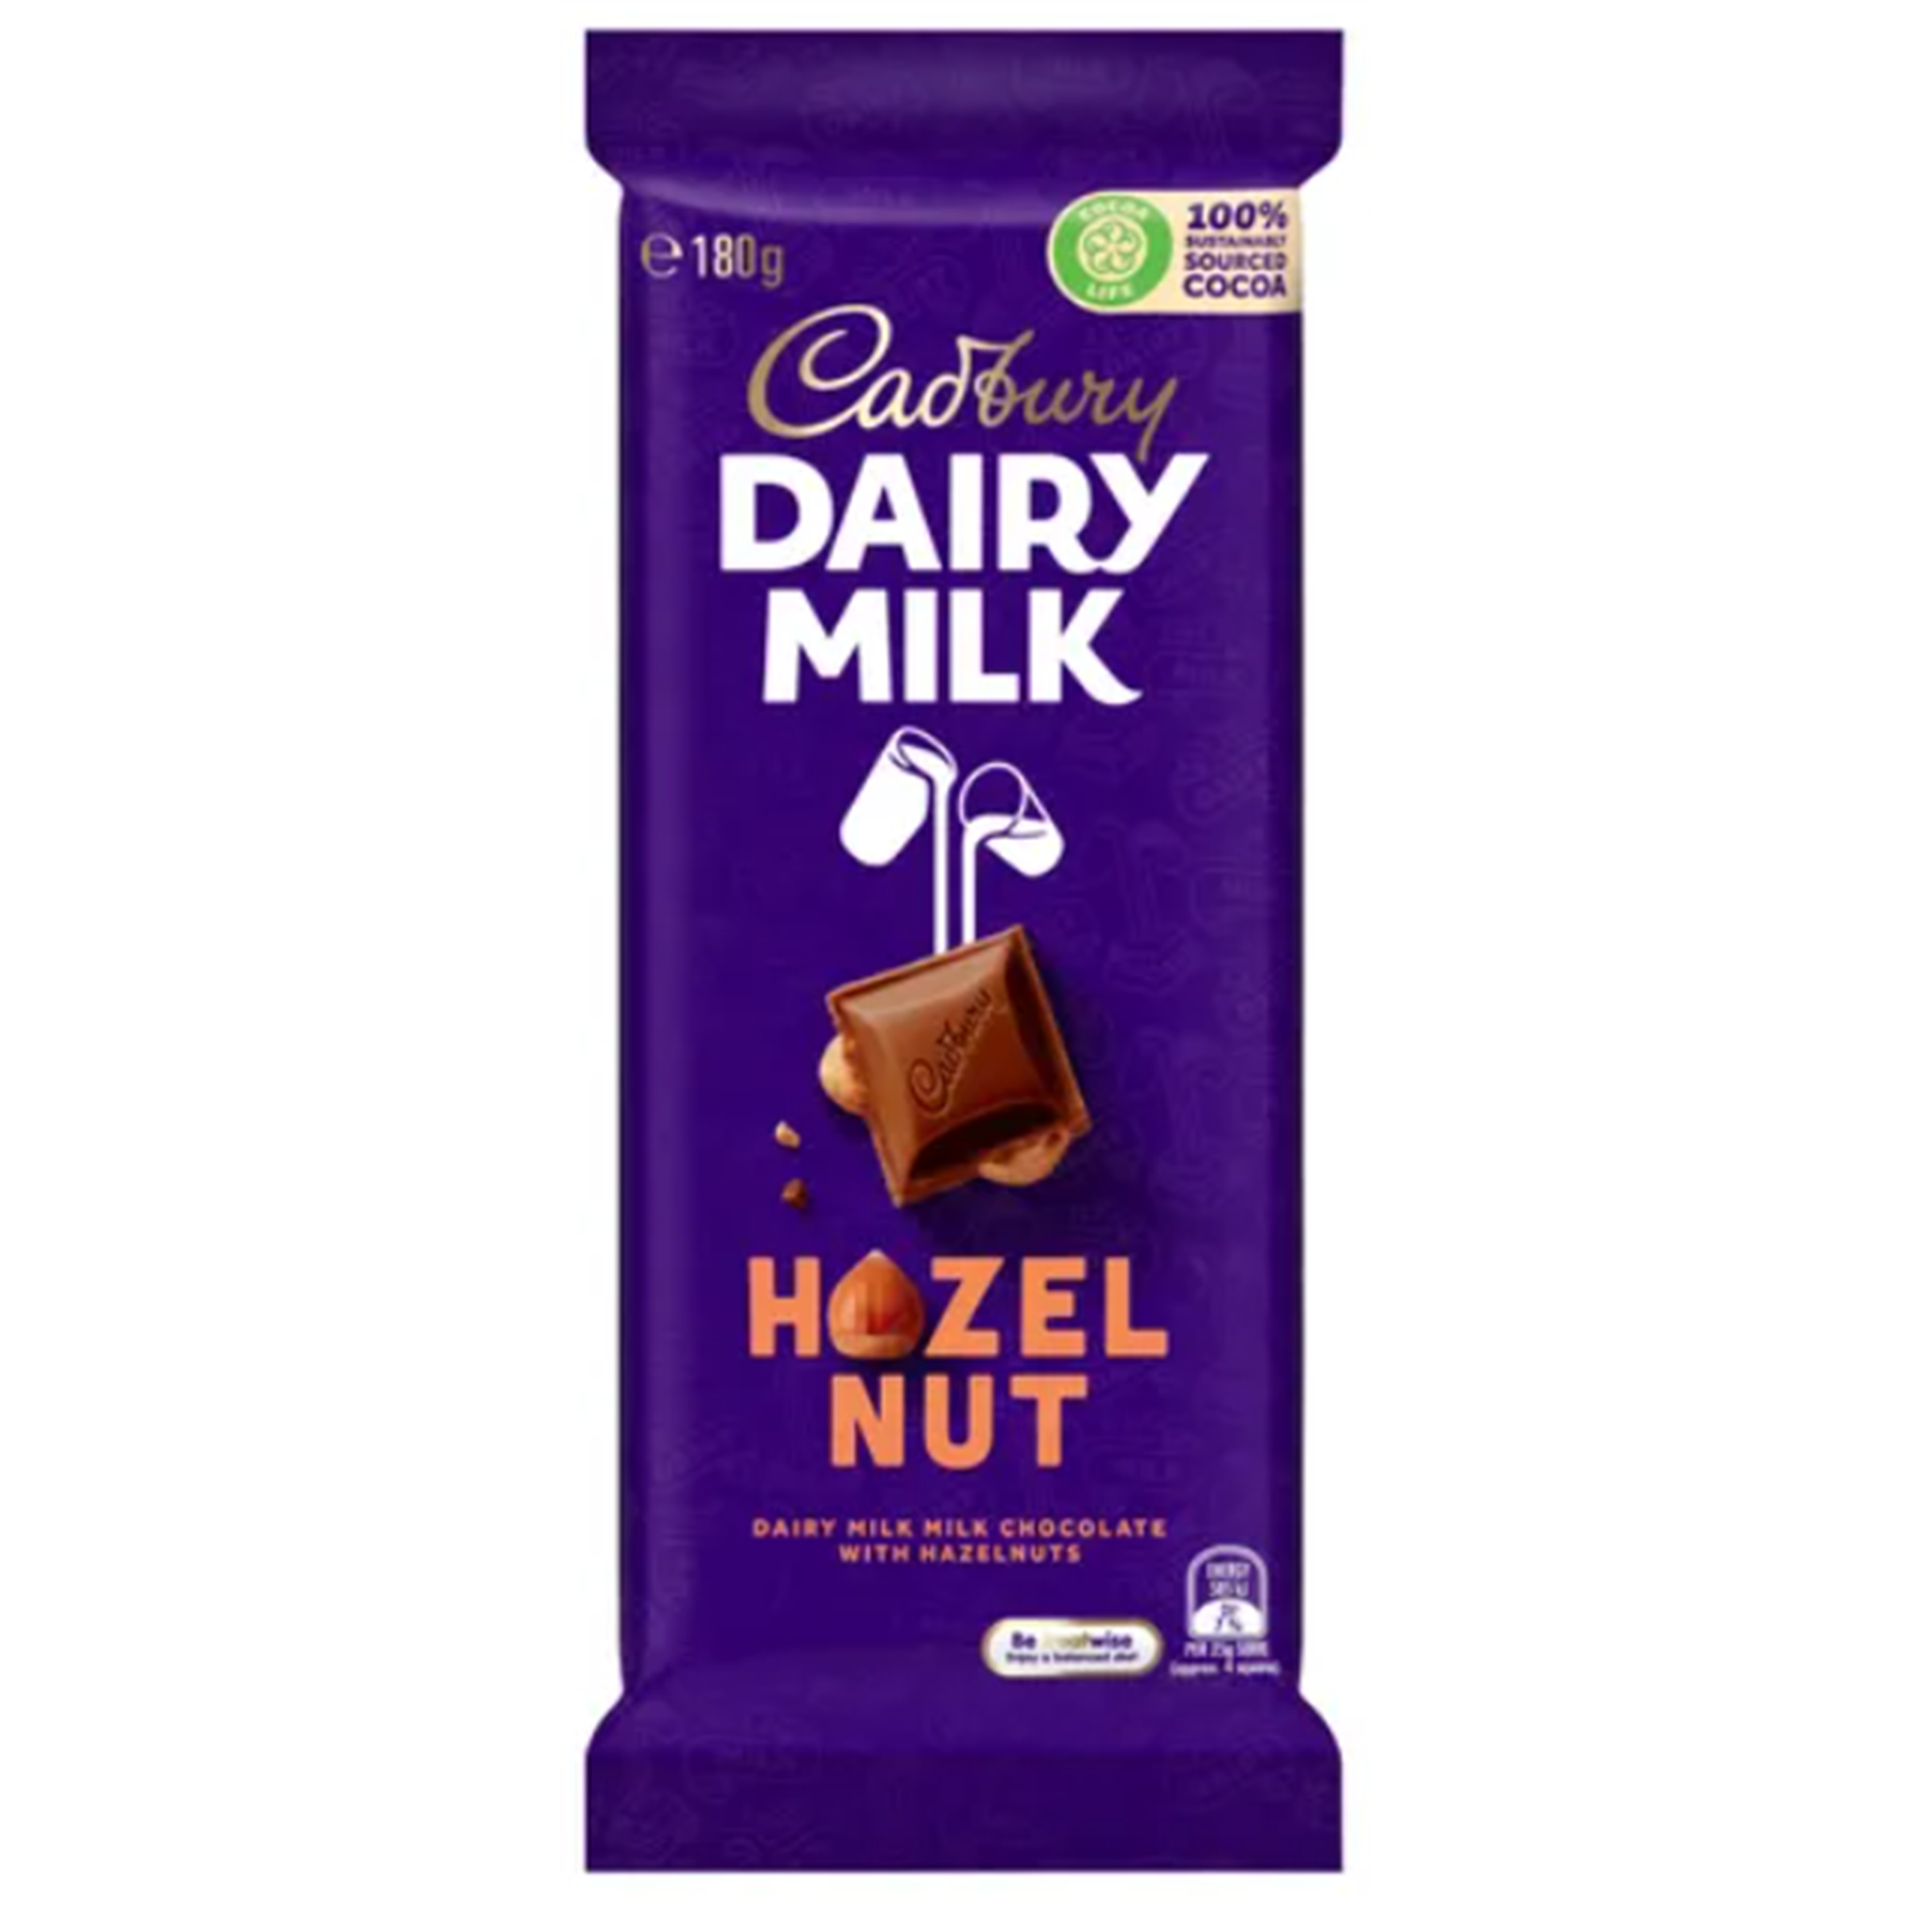 Cadbury Hazelnut - Australia